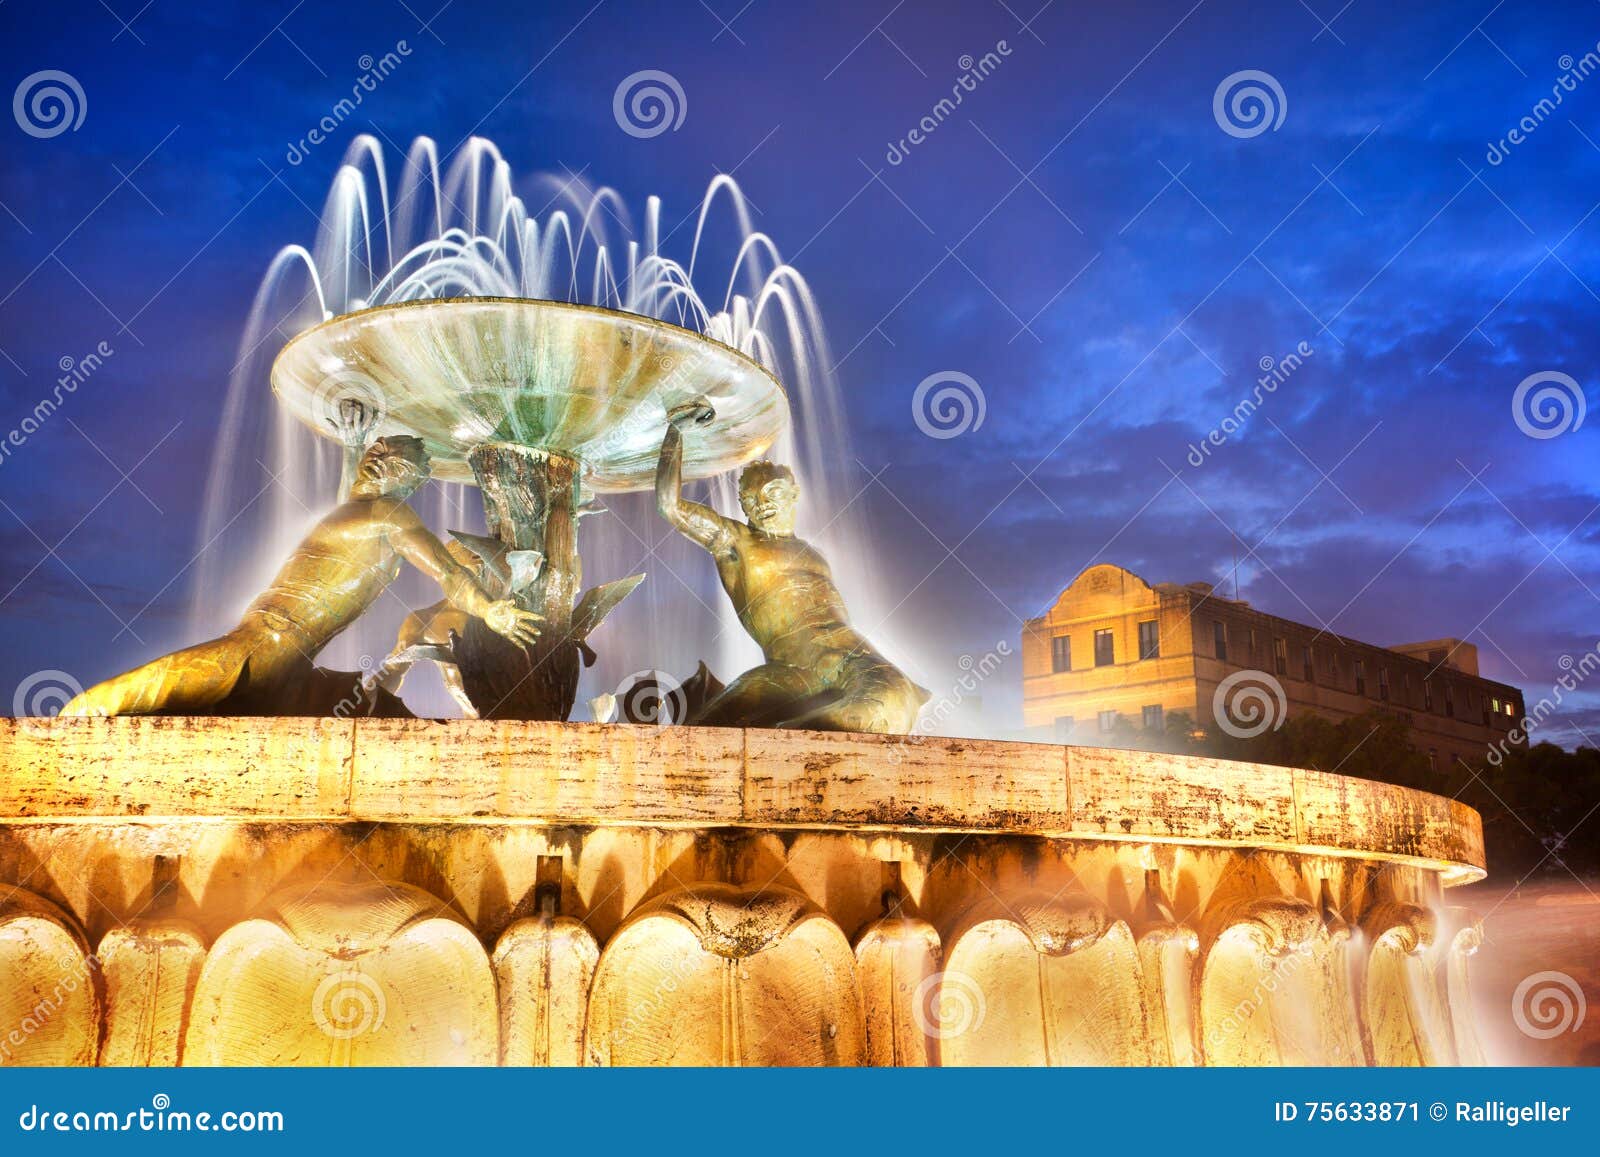 the triton fountain at the entrance of valletta, malta